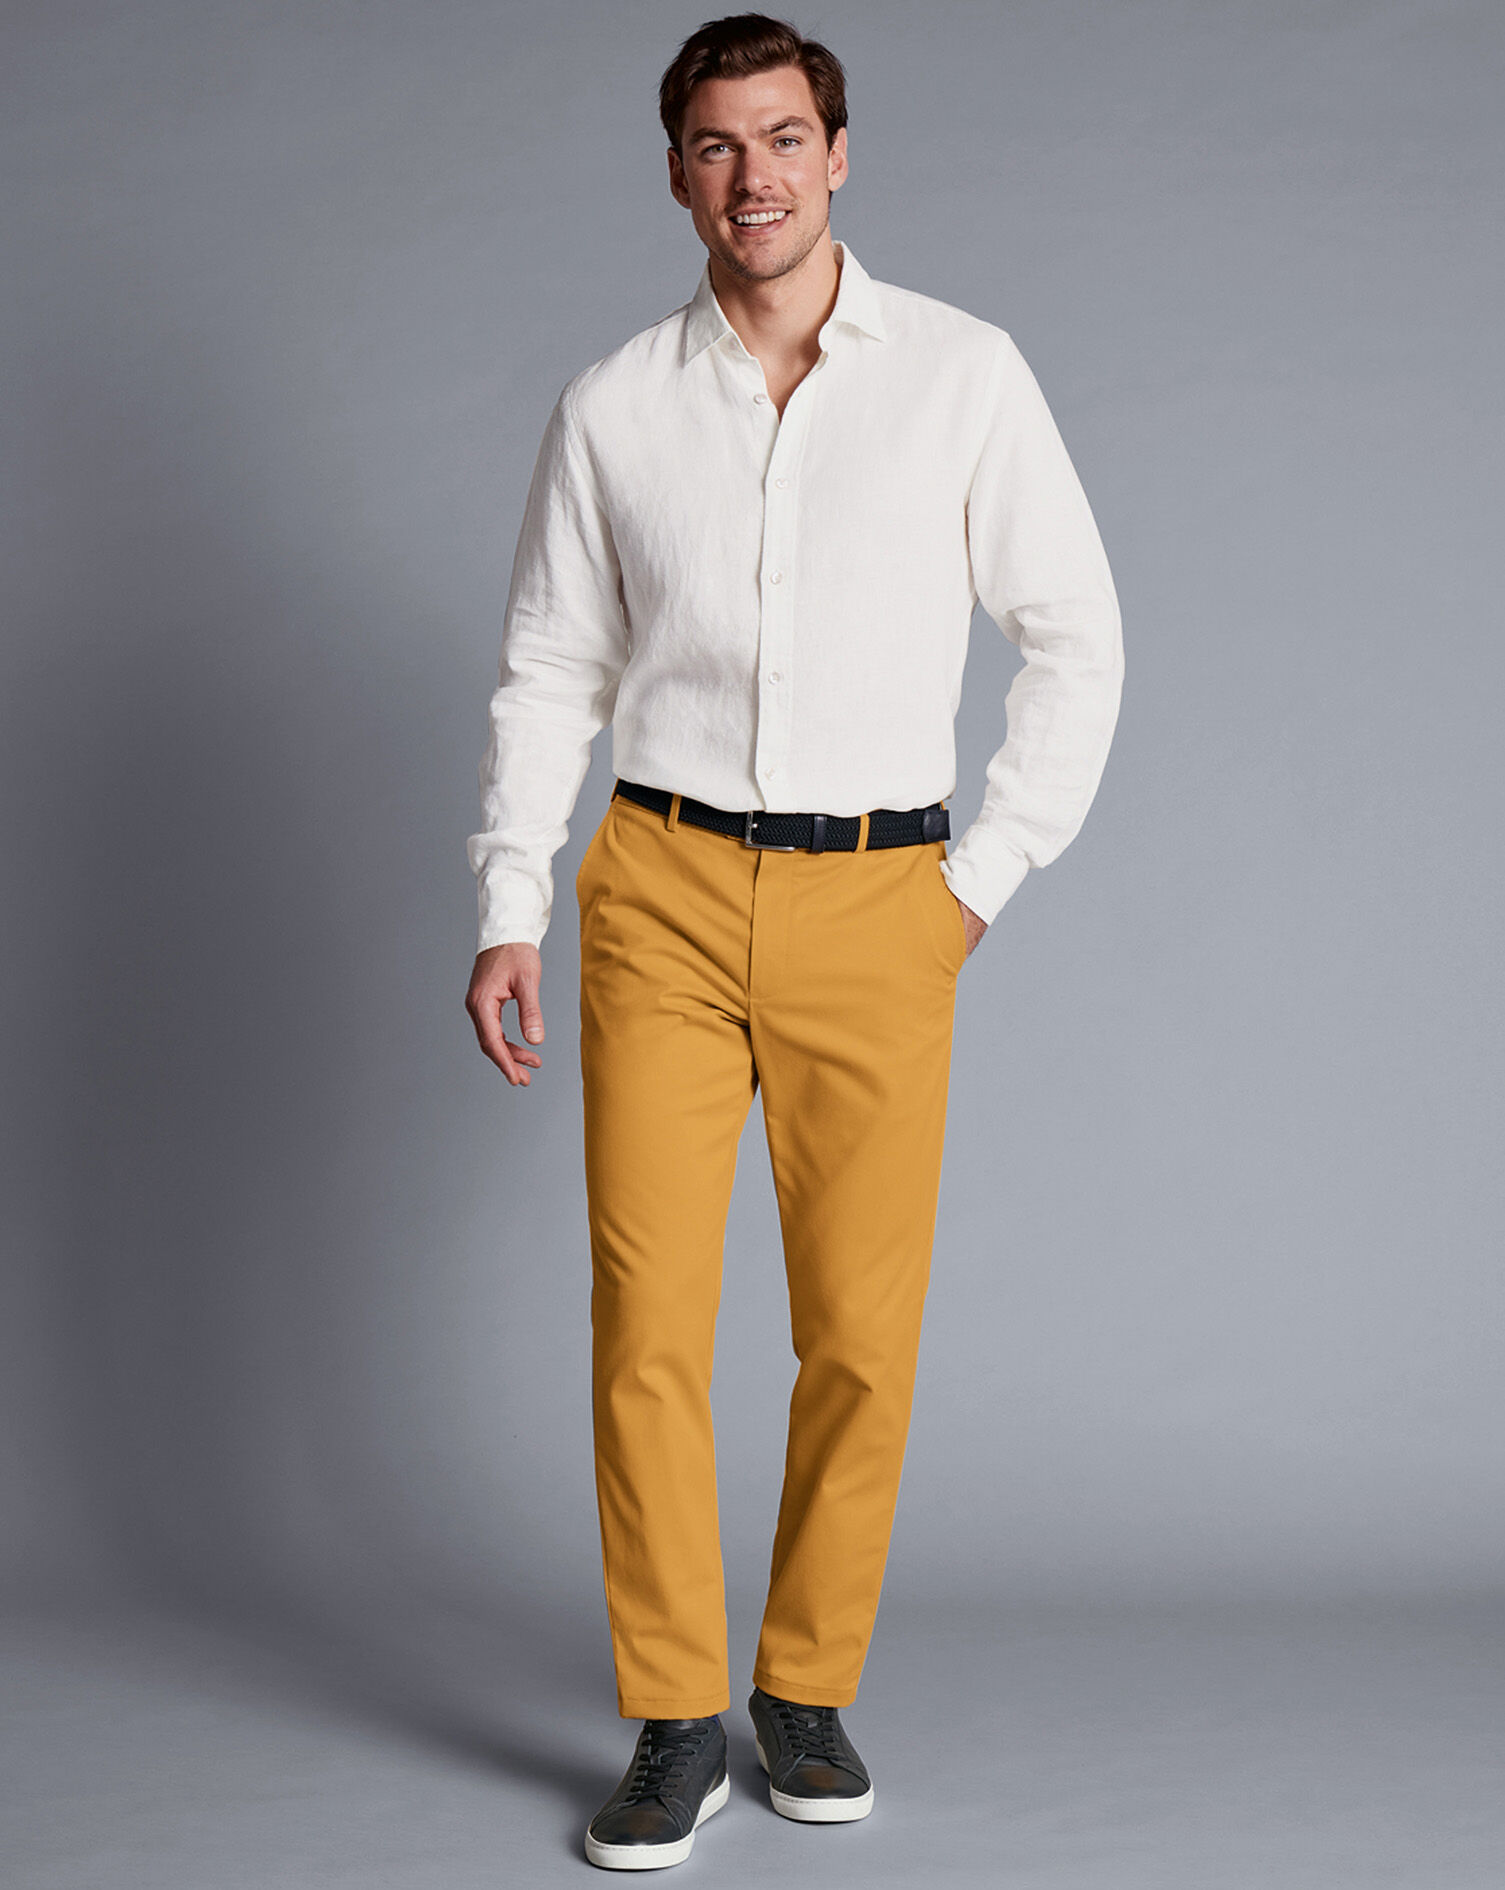 Men's Yellow Pants | Nordstrom